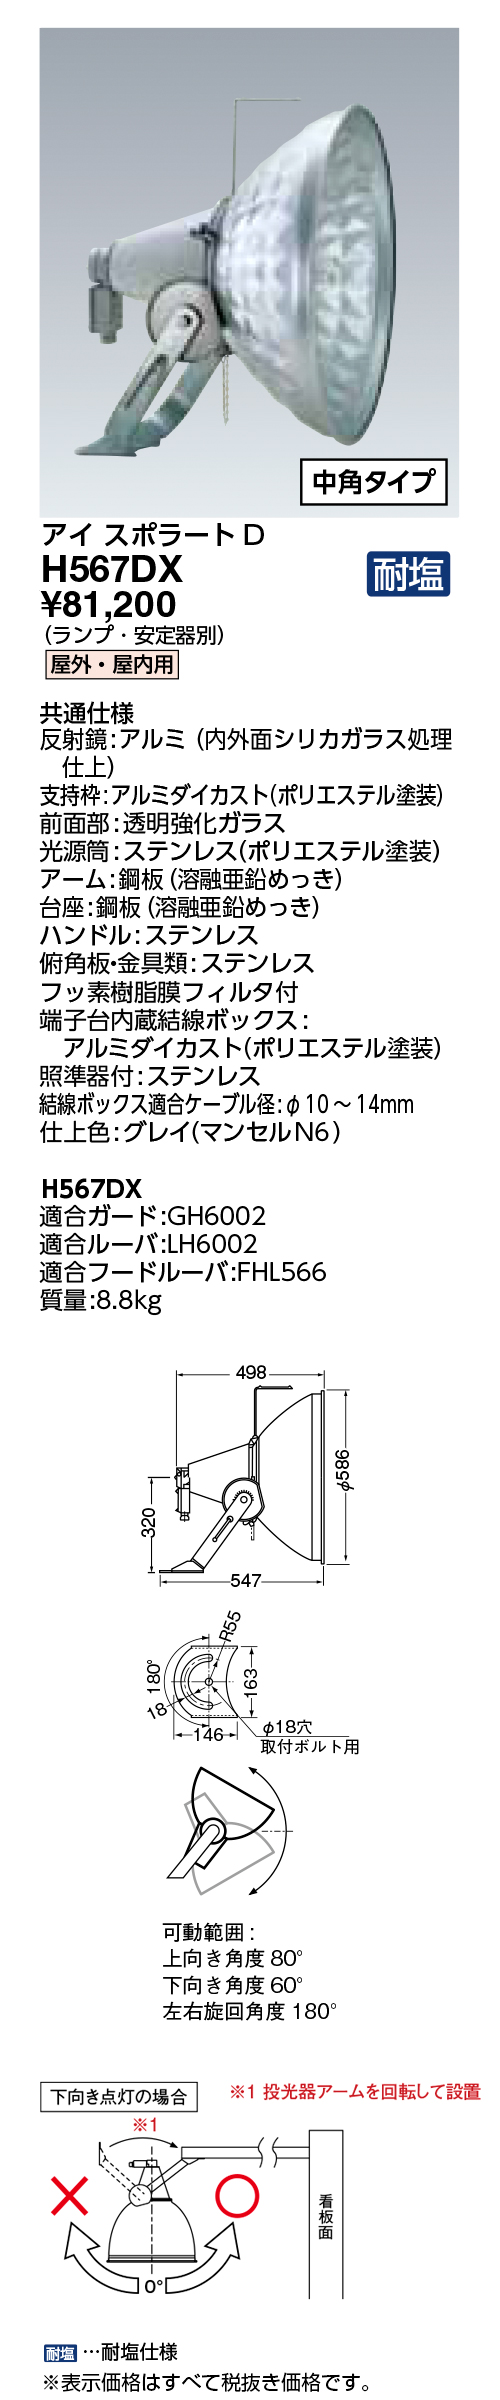 岩崎電気 HID投光器(普及形) H373D - 2